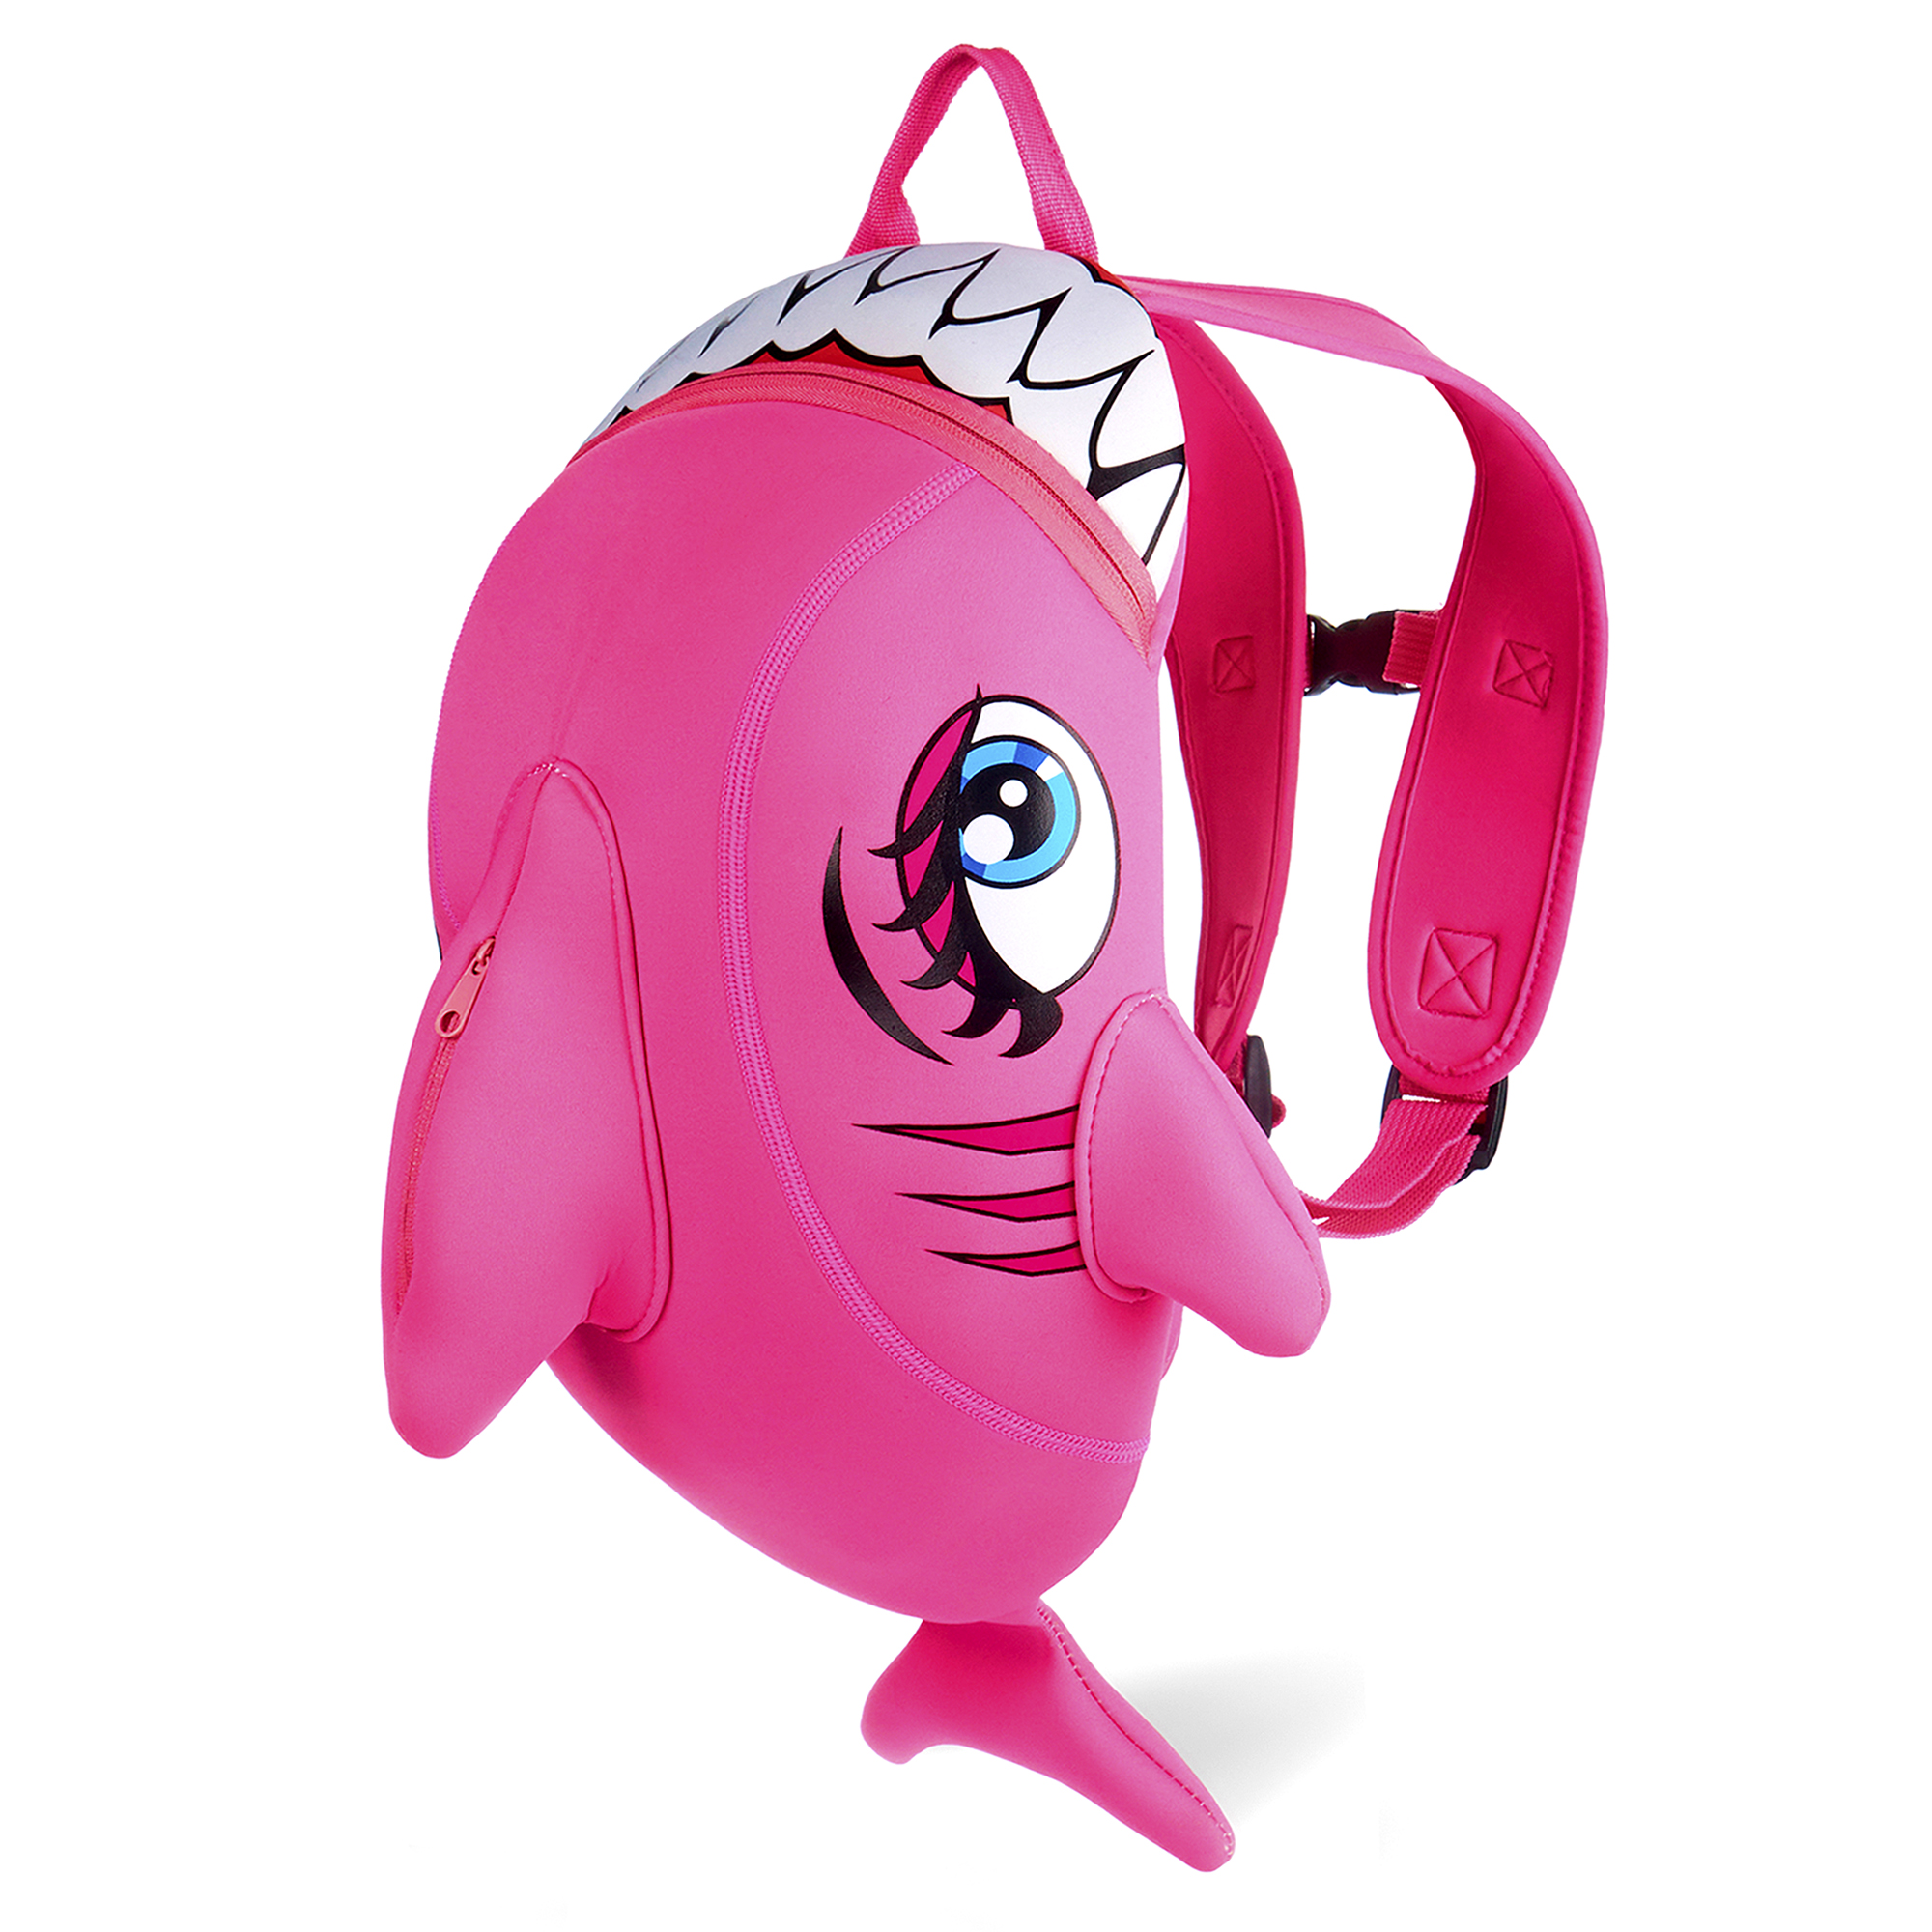 Se Crazy Safety pink haj rygsæk til børn Slidstærk neoprentaske med mange funktioner. Testet og godkendt til børn hos Crazy Safety